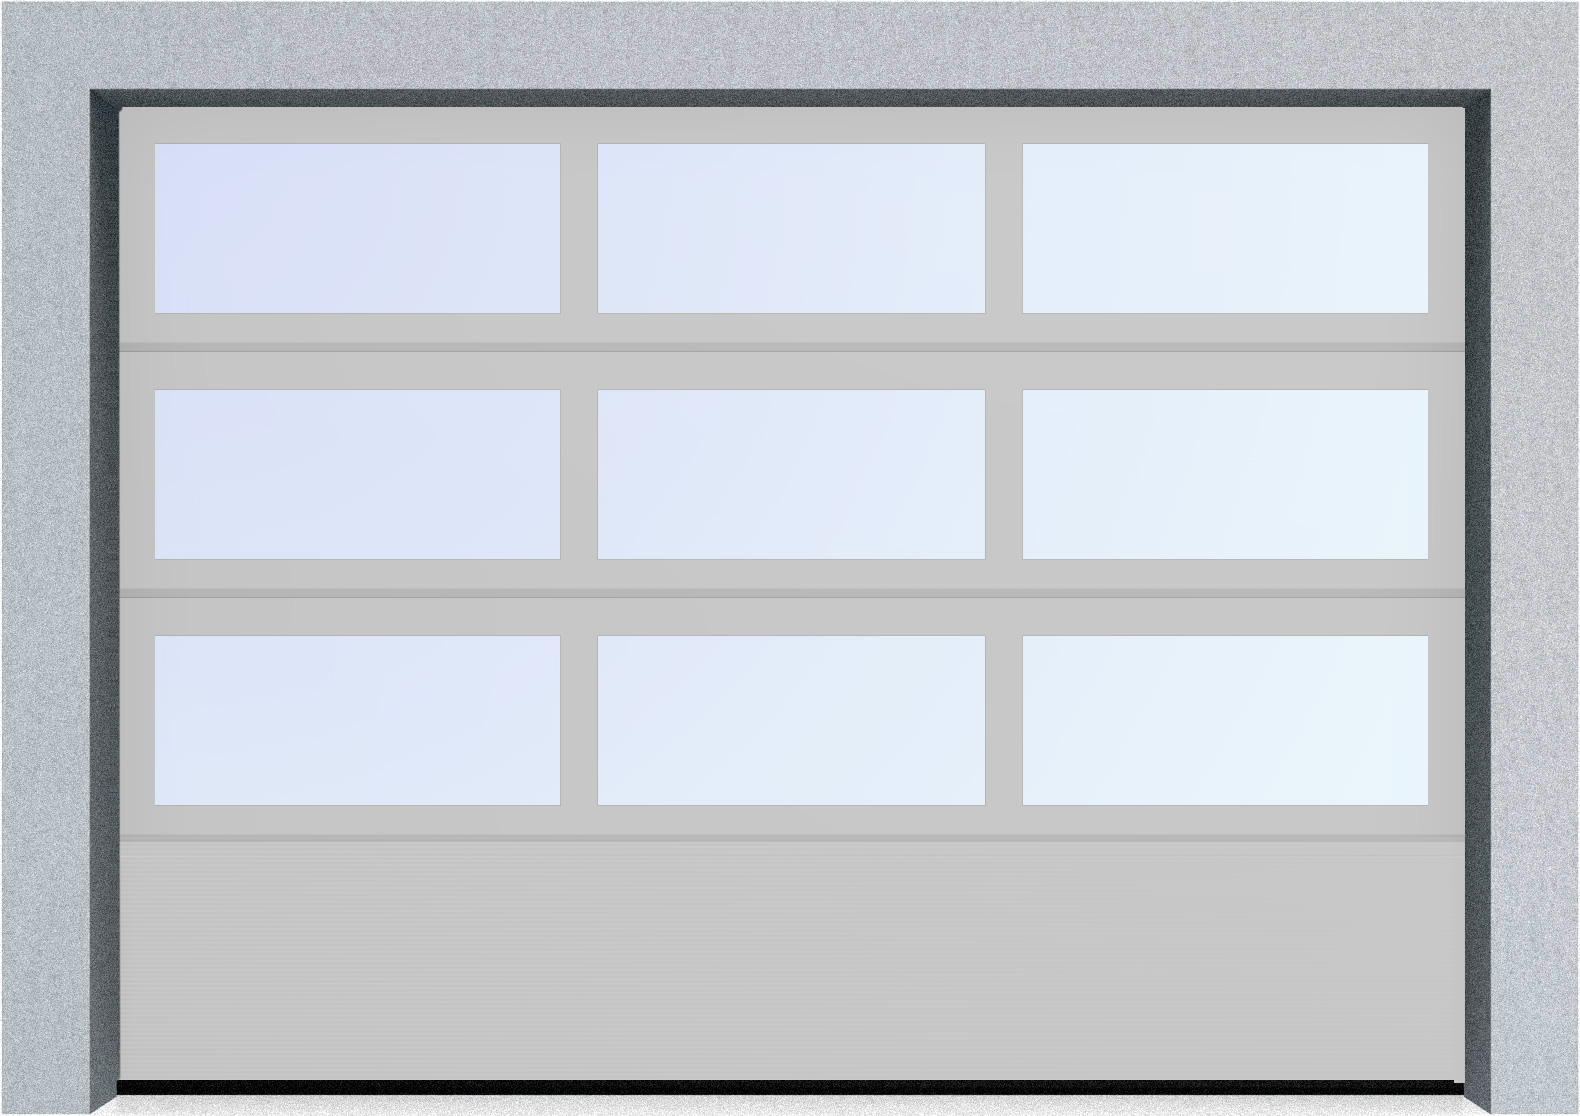  Секционные панорамные ворота серии AluTrend с комбинированным типом полотна (АЛПС) 2500х2375 нижняя панель S-гофр, Микроволна стандартные цвета, фото 15 